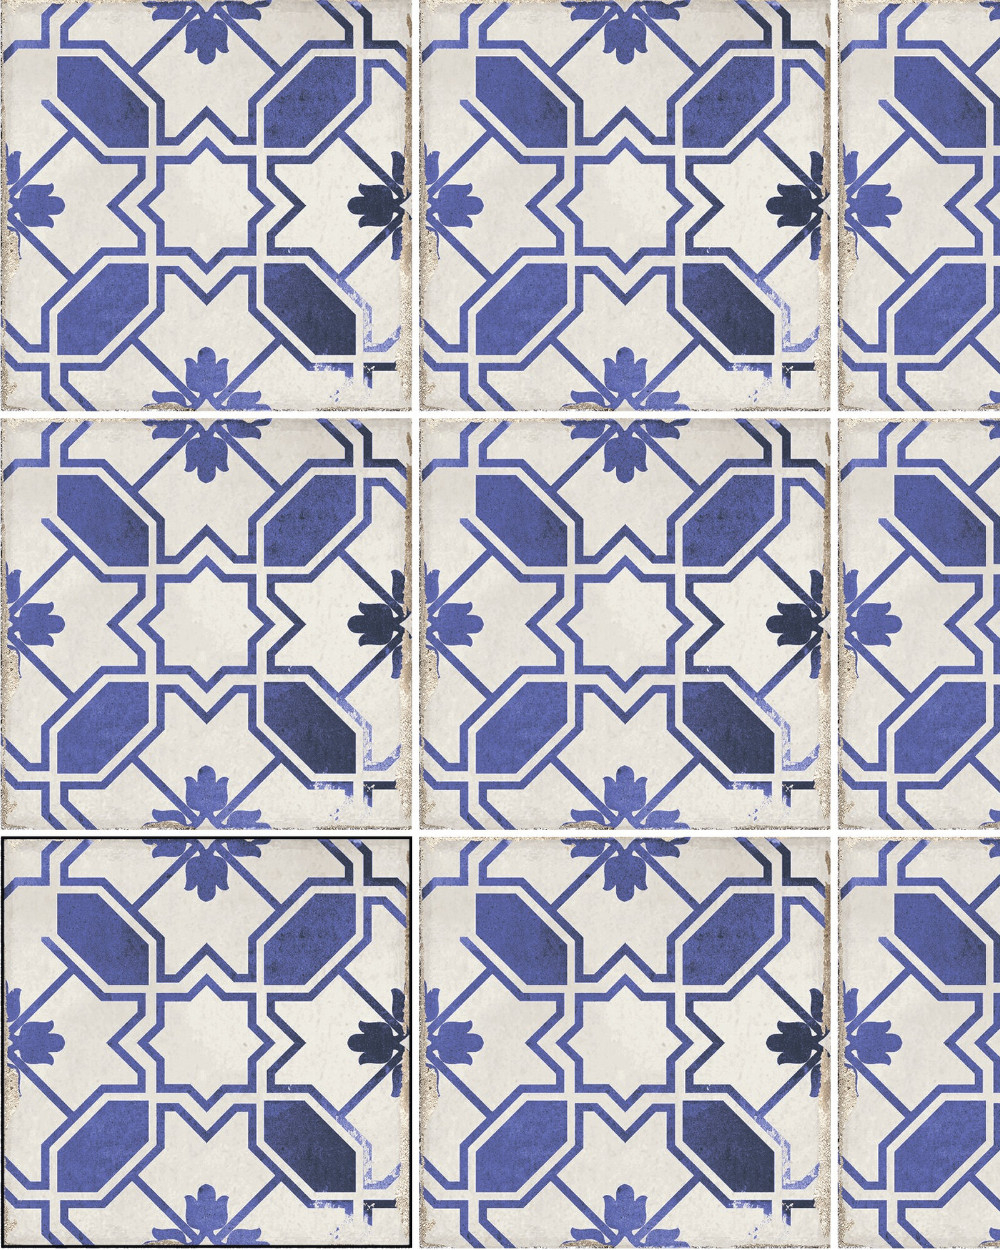 Vintage Tiles Blue 15x15 cm | Village Caleta Blue